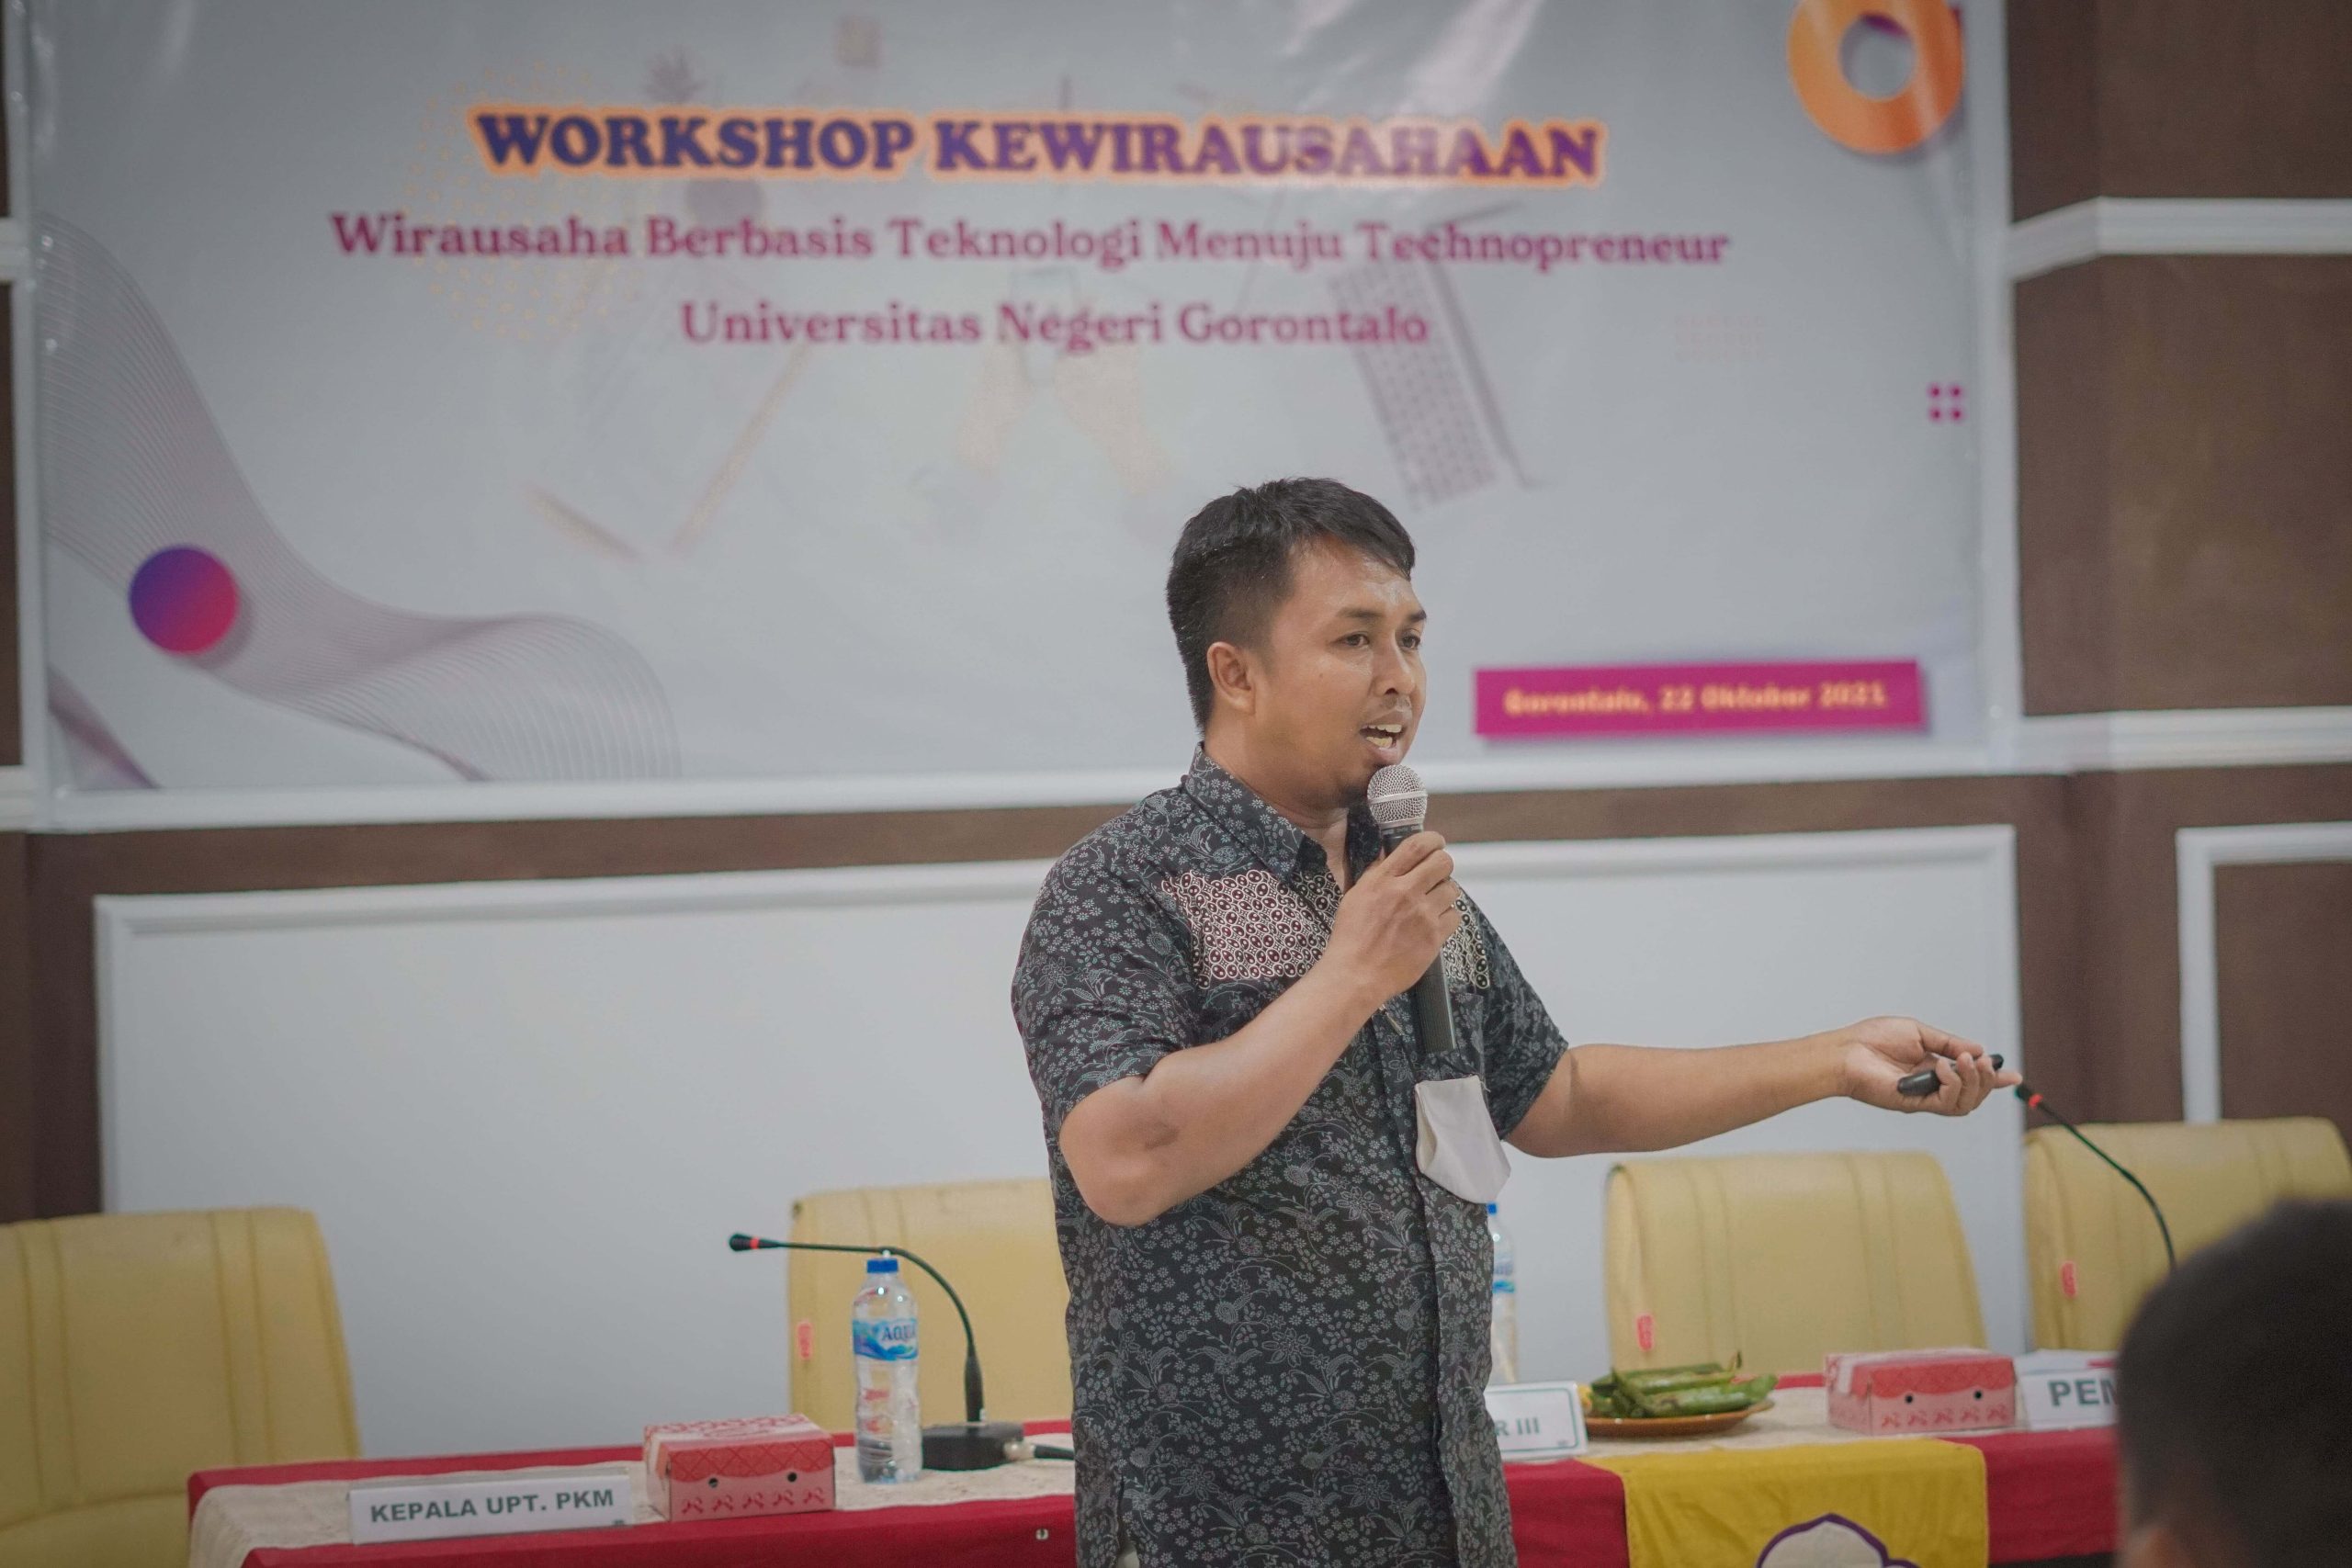 Workshop Kewirausahaan Berbasis Teknologi